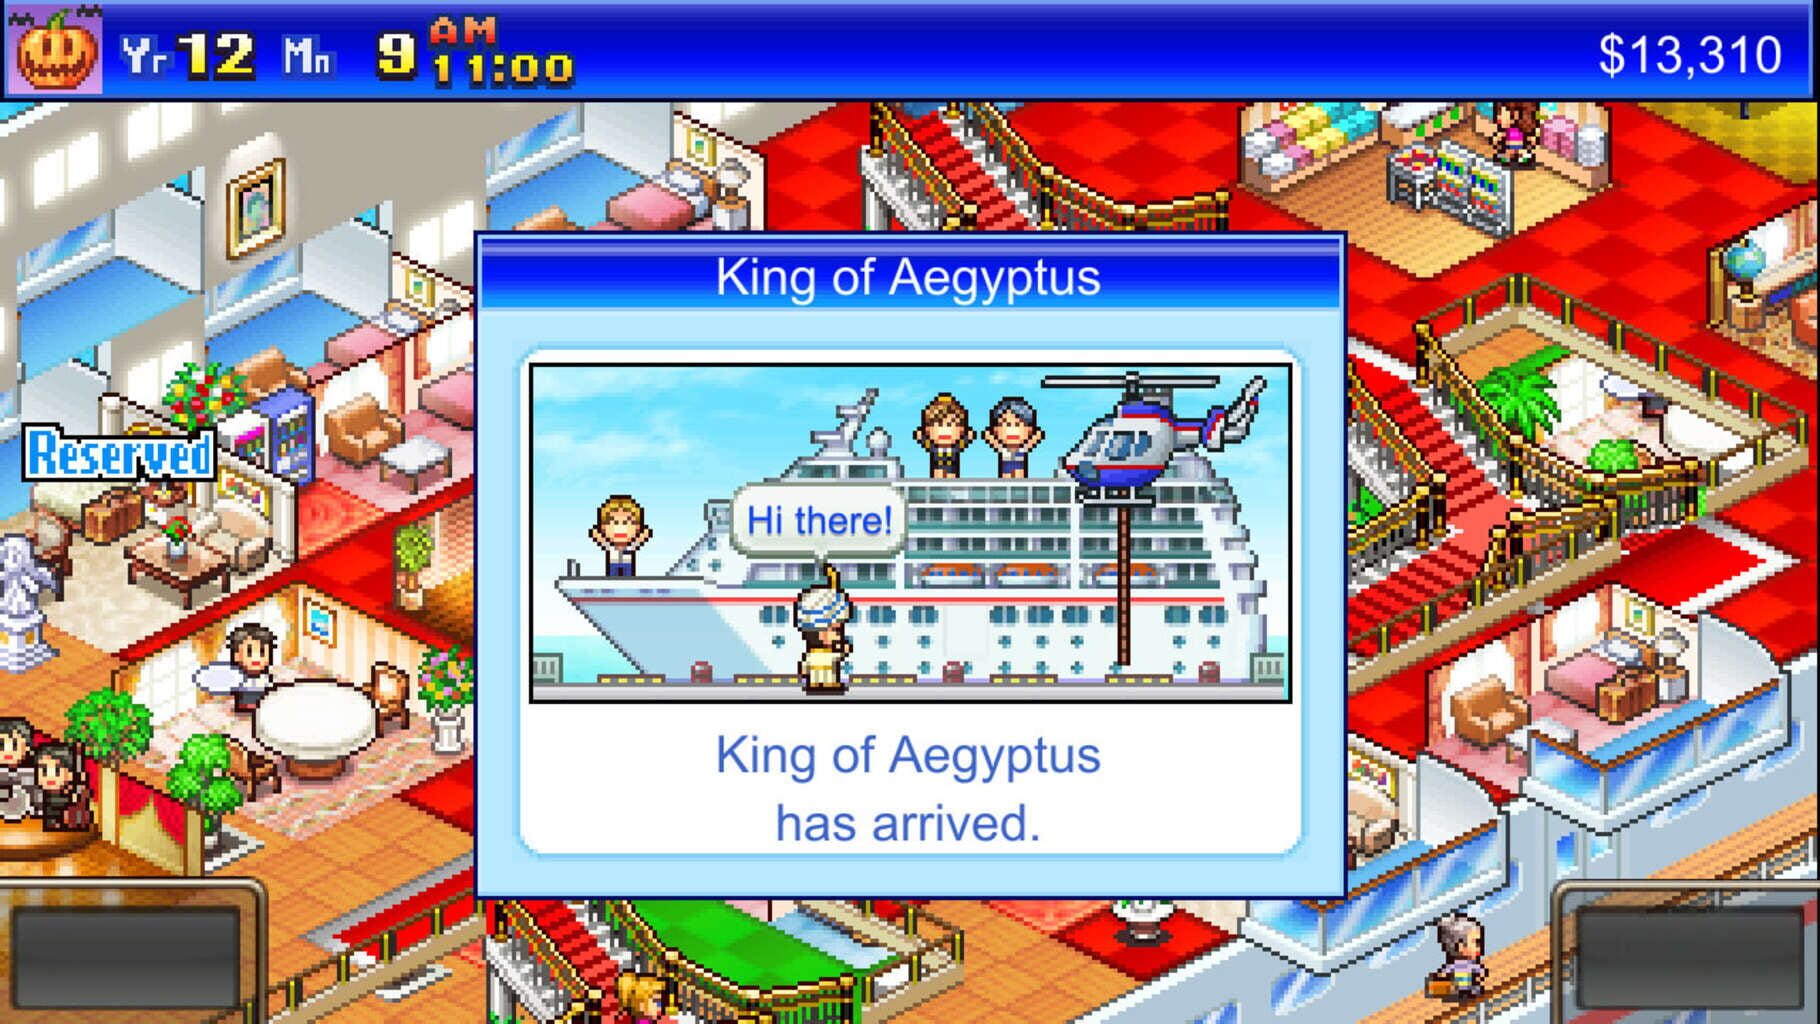 World Cruise Story screenshot